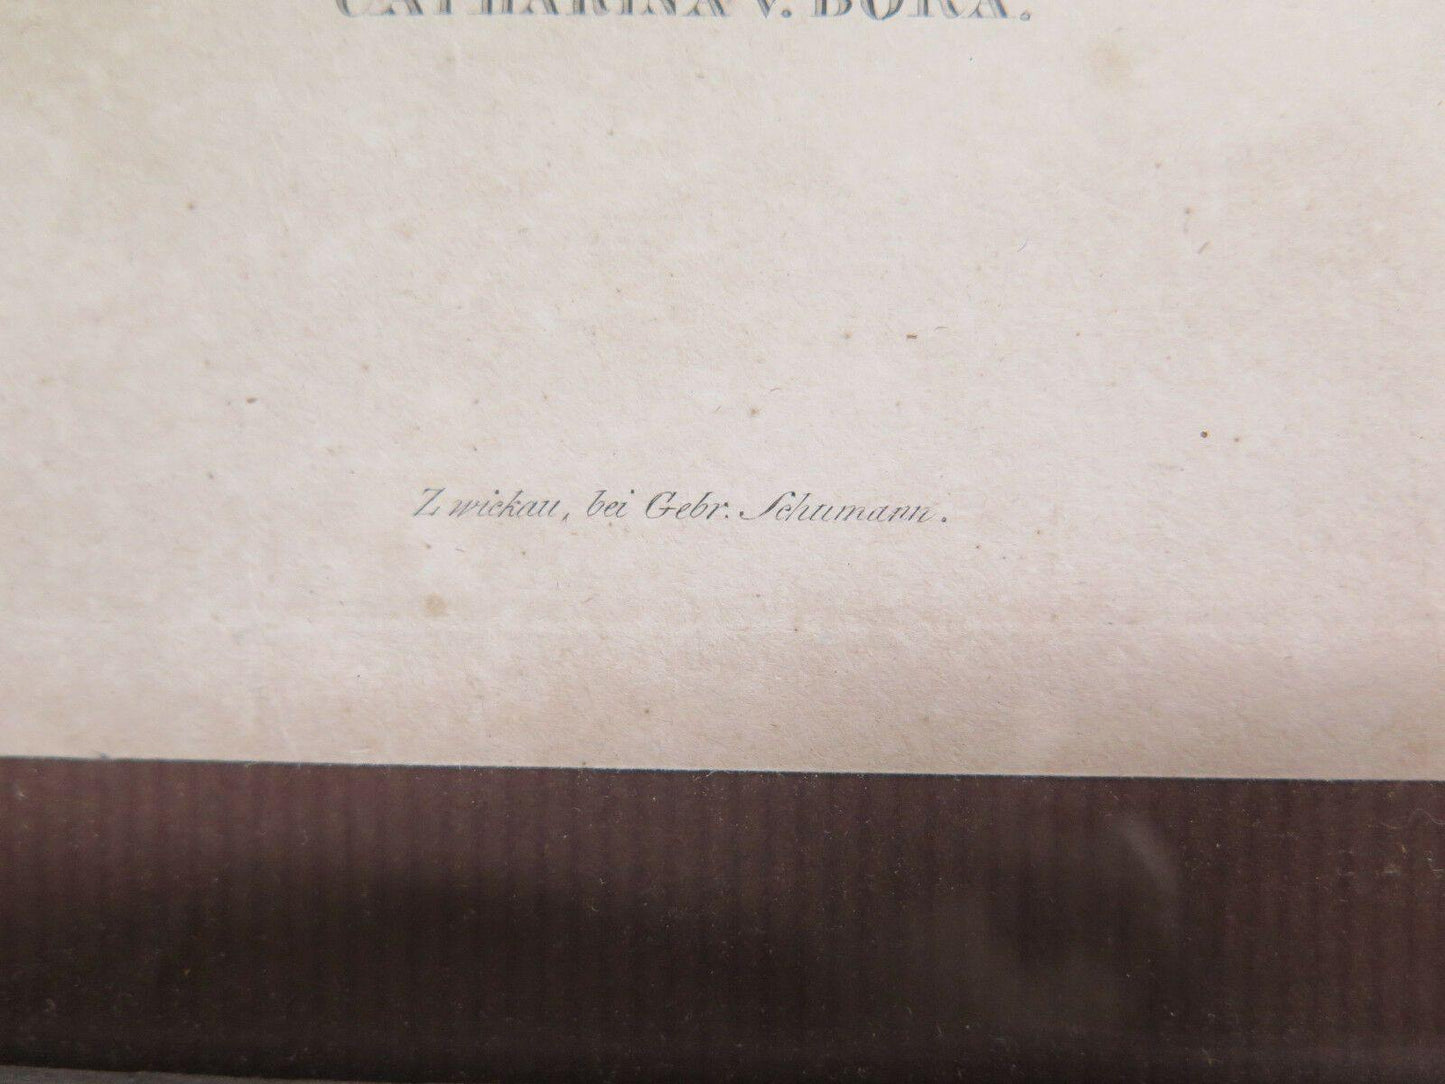 ANTICA INCISIONE STAMPA RITRATTO DI CATERINA BORA Katharina von Bora R116 - Belbello Antiques